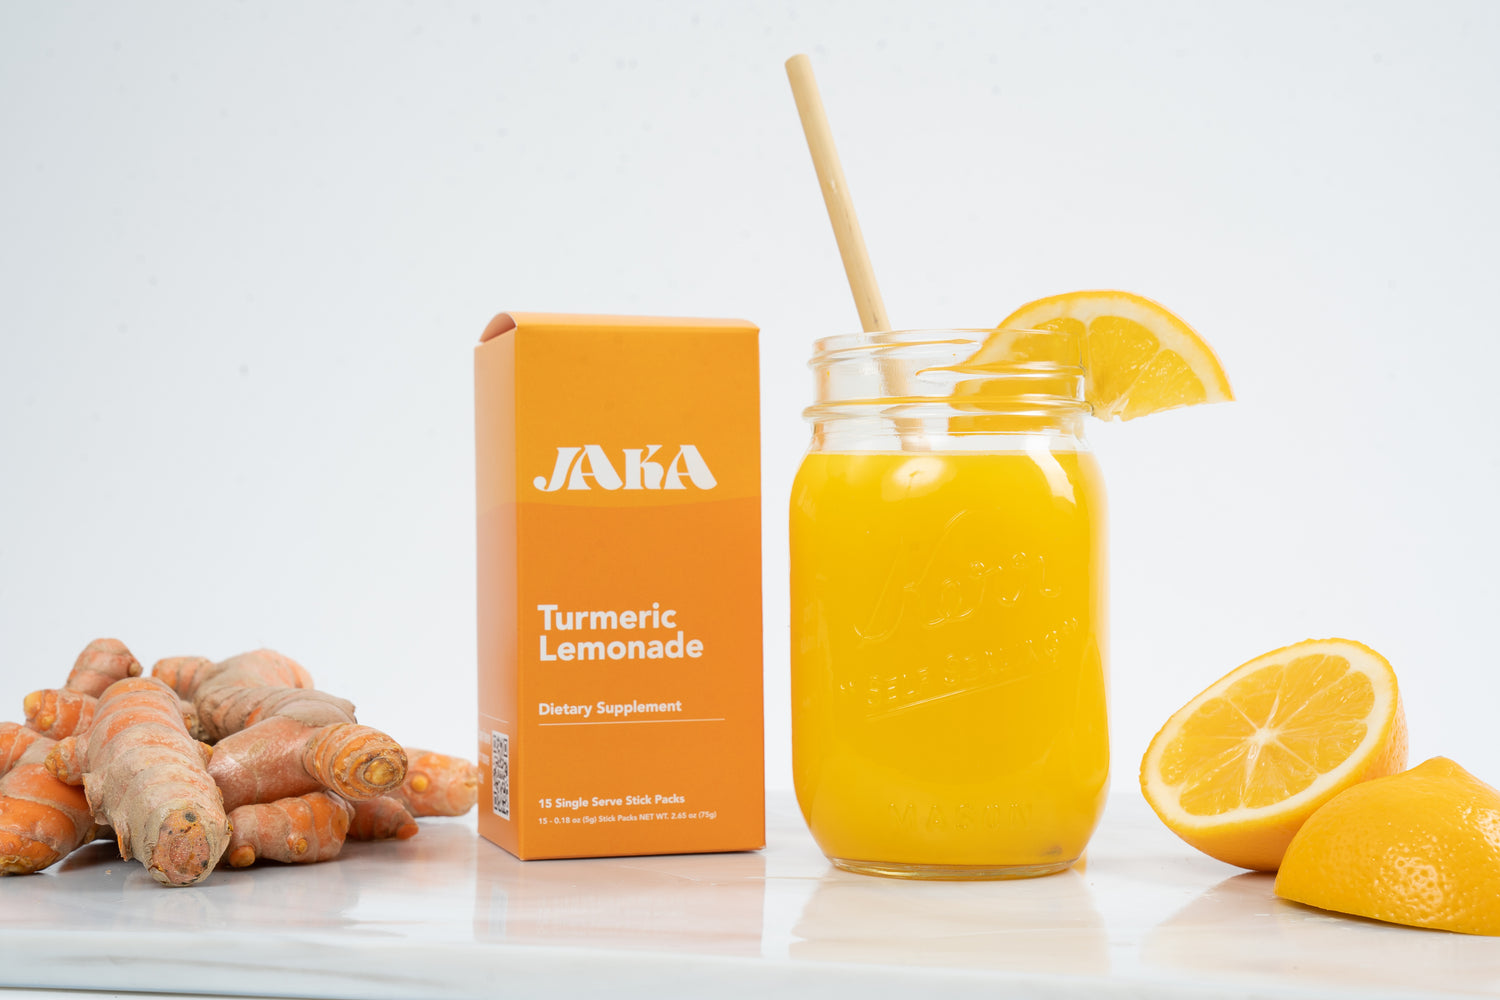 Jaka turmeric lemonade box with turmeric, lemons and a glass of jaka turmeric lemonade